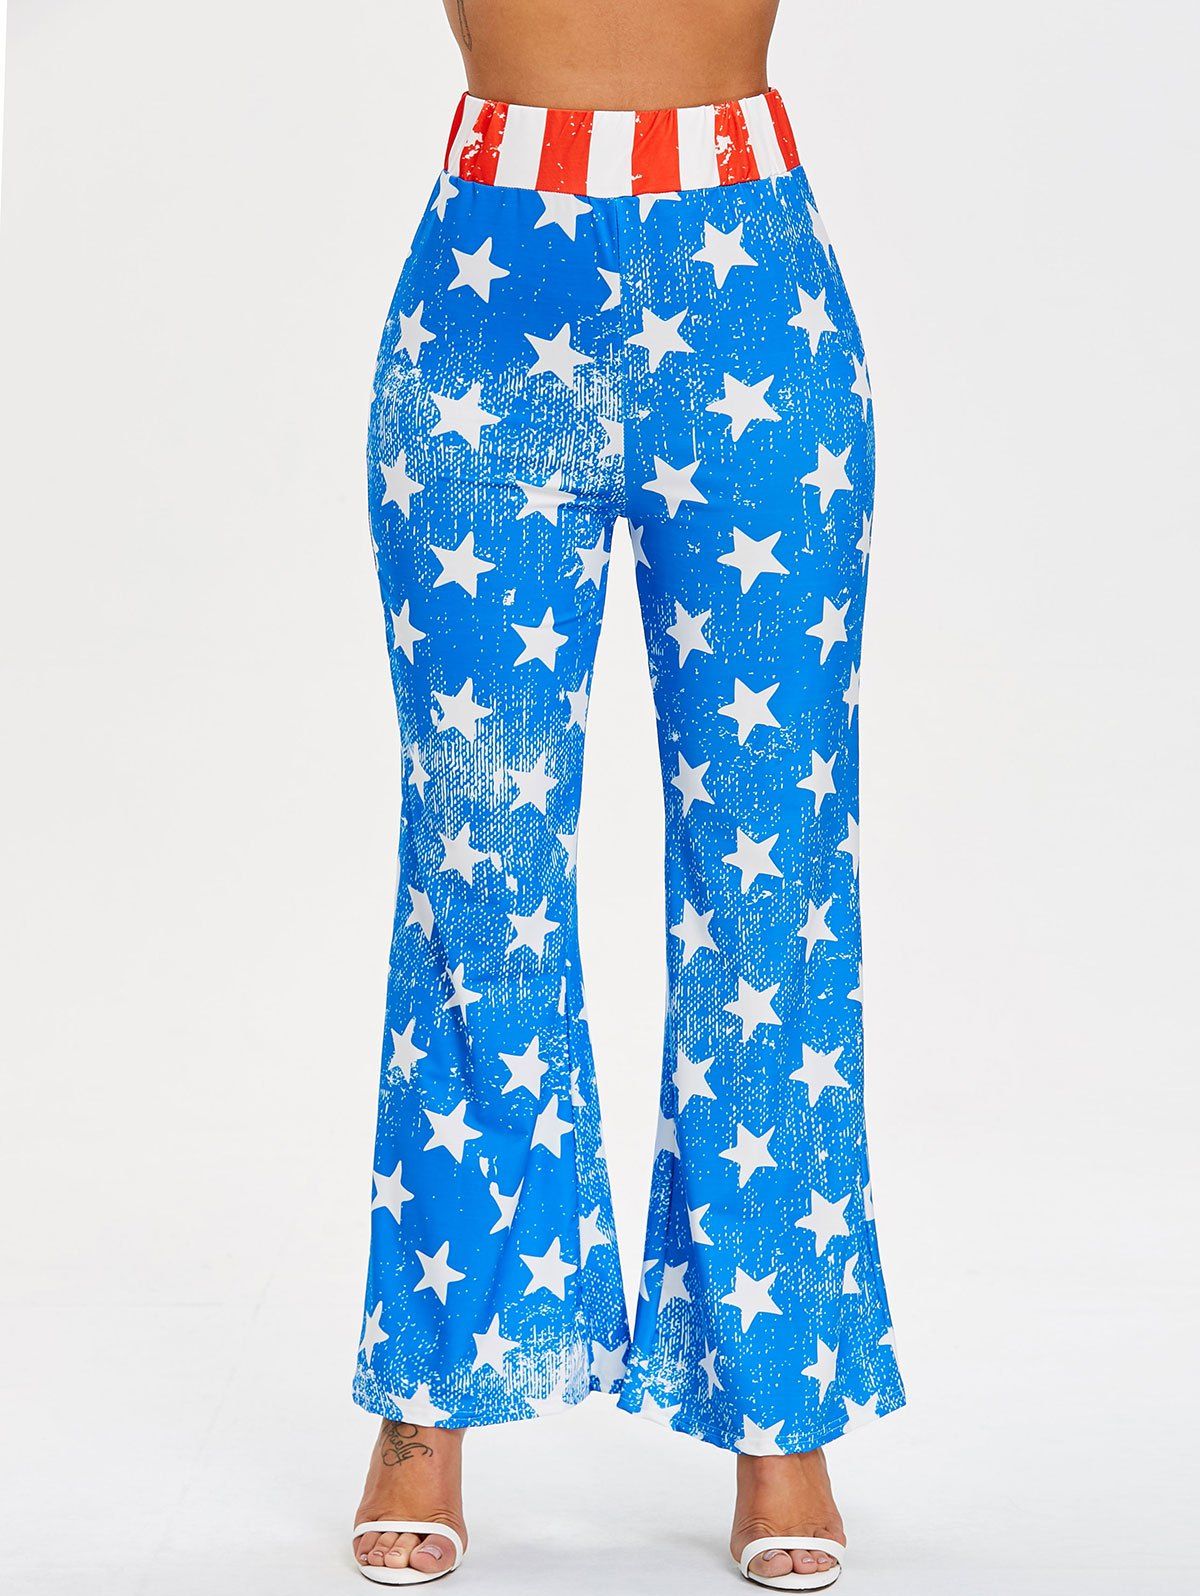 Elastic Waist Star Print Pants - COLORMIX L